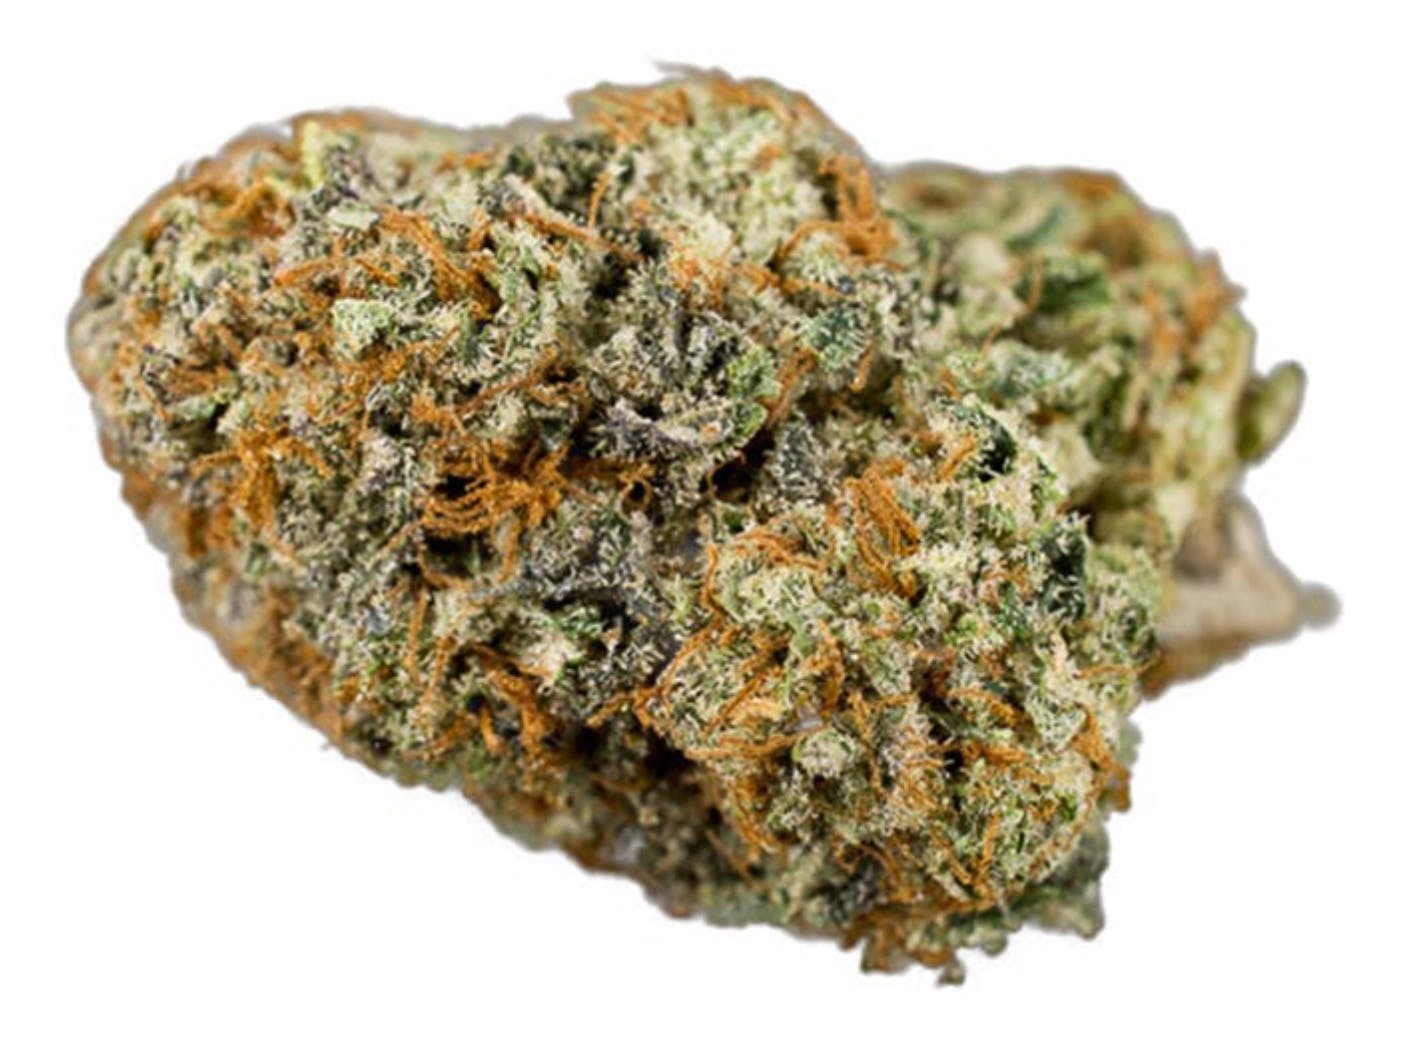 marijuana-dispensaries-7520-foothill-blvd-tujunga-do-si-dos-5g-40-45